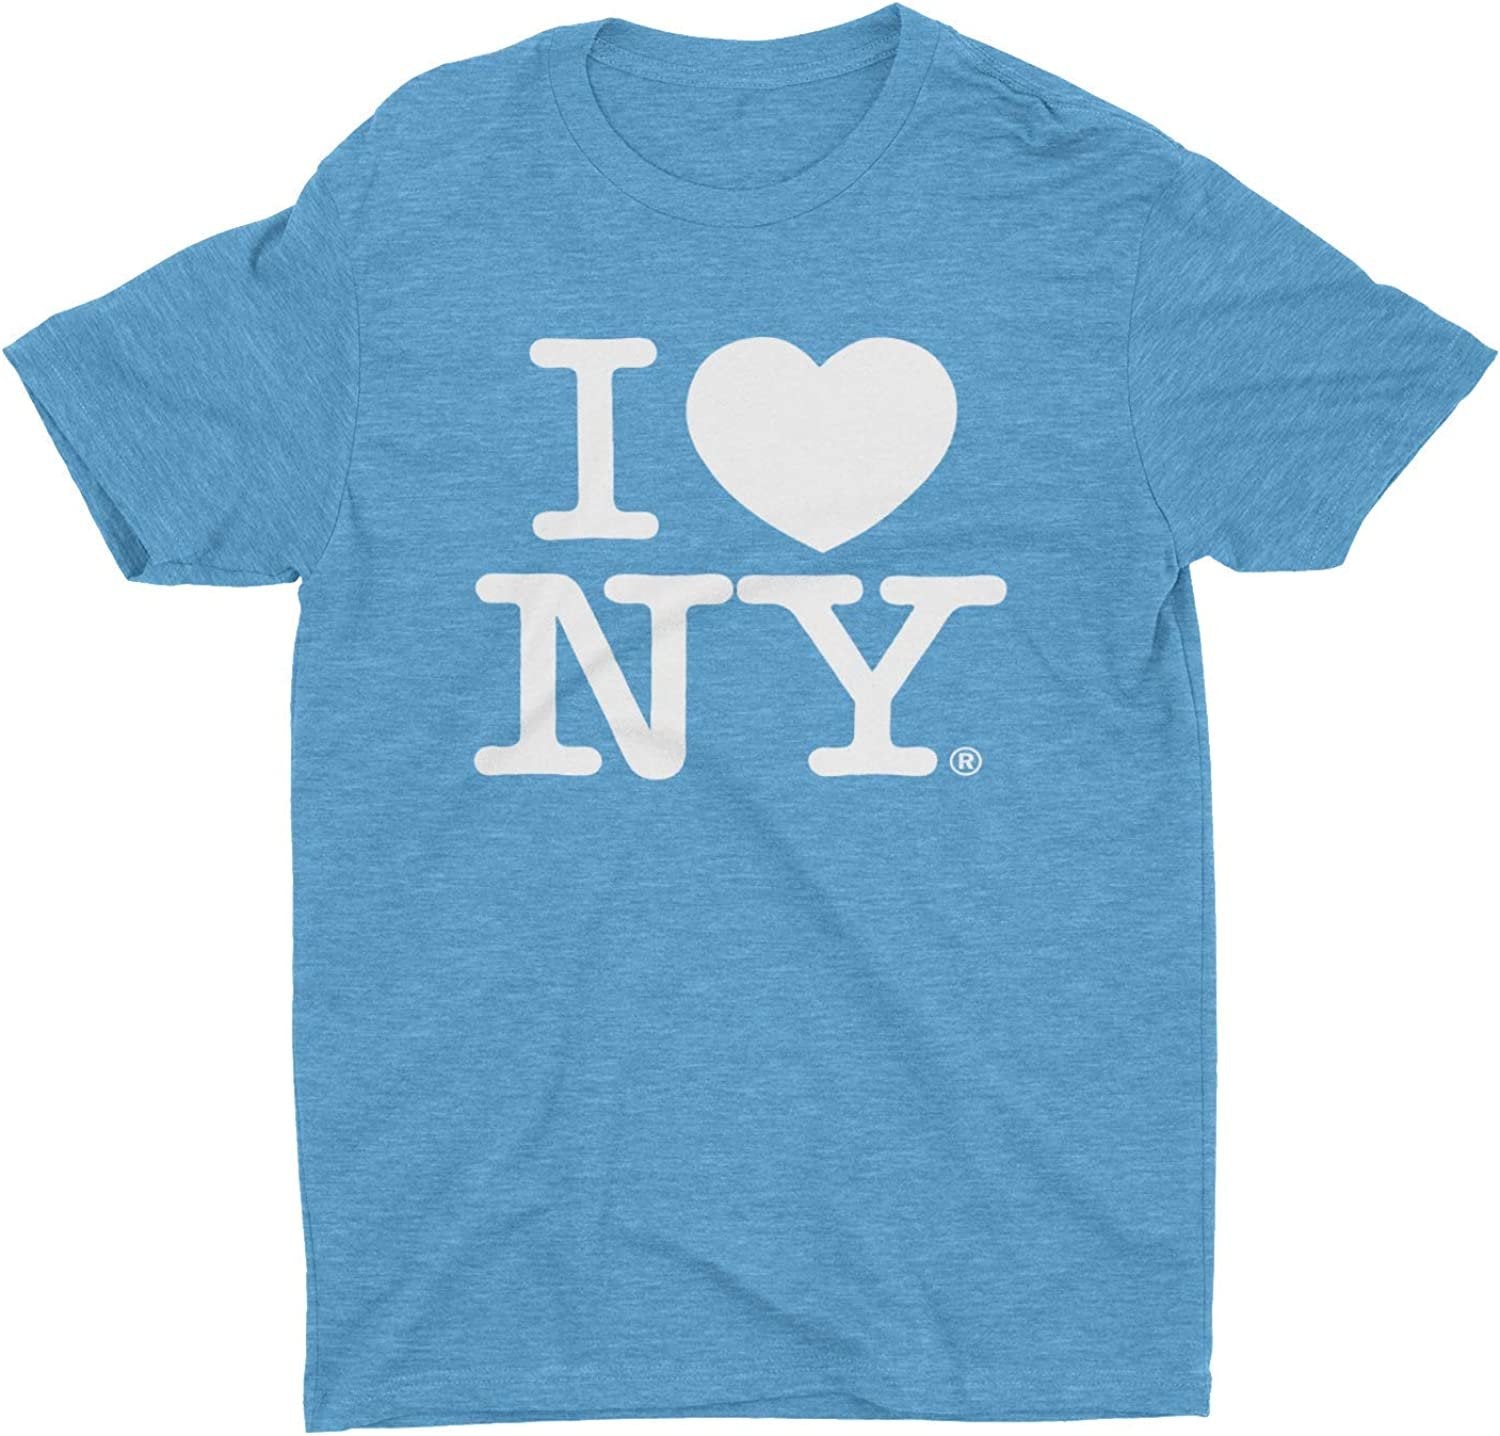 Ich liebe NY Retro Vintage T-Shirt Heather Türkis